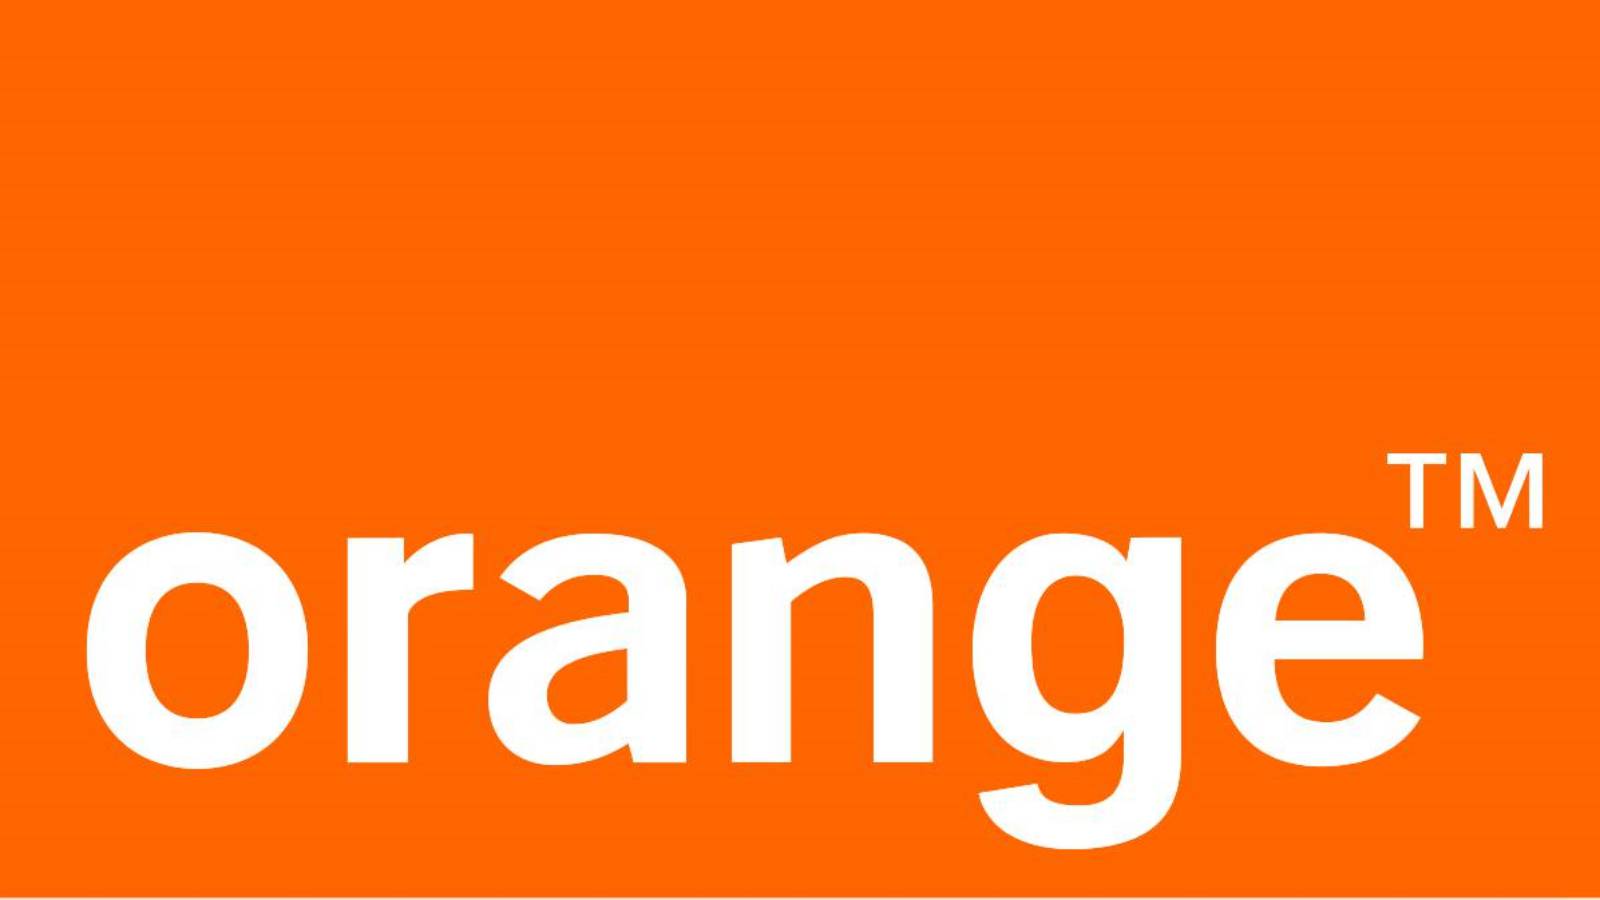 orange dublare